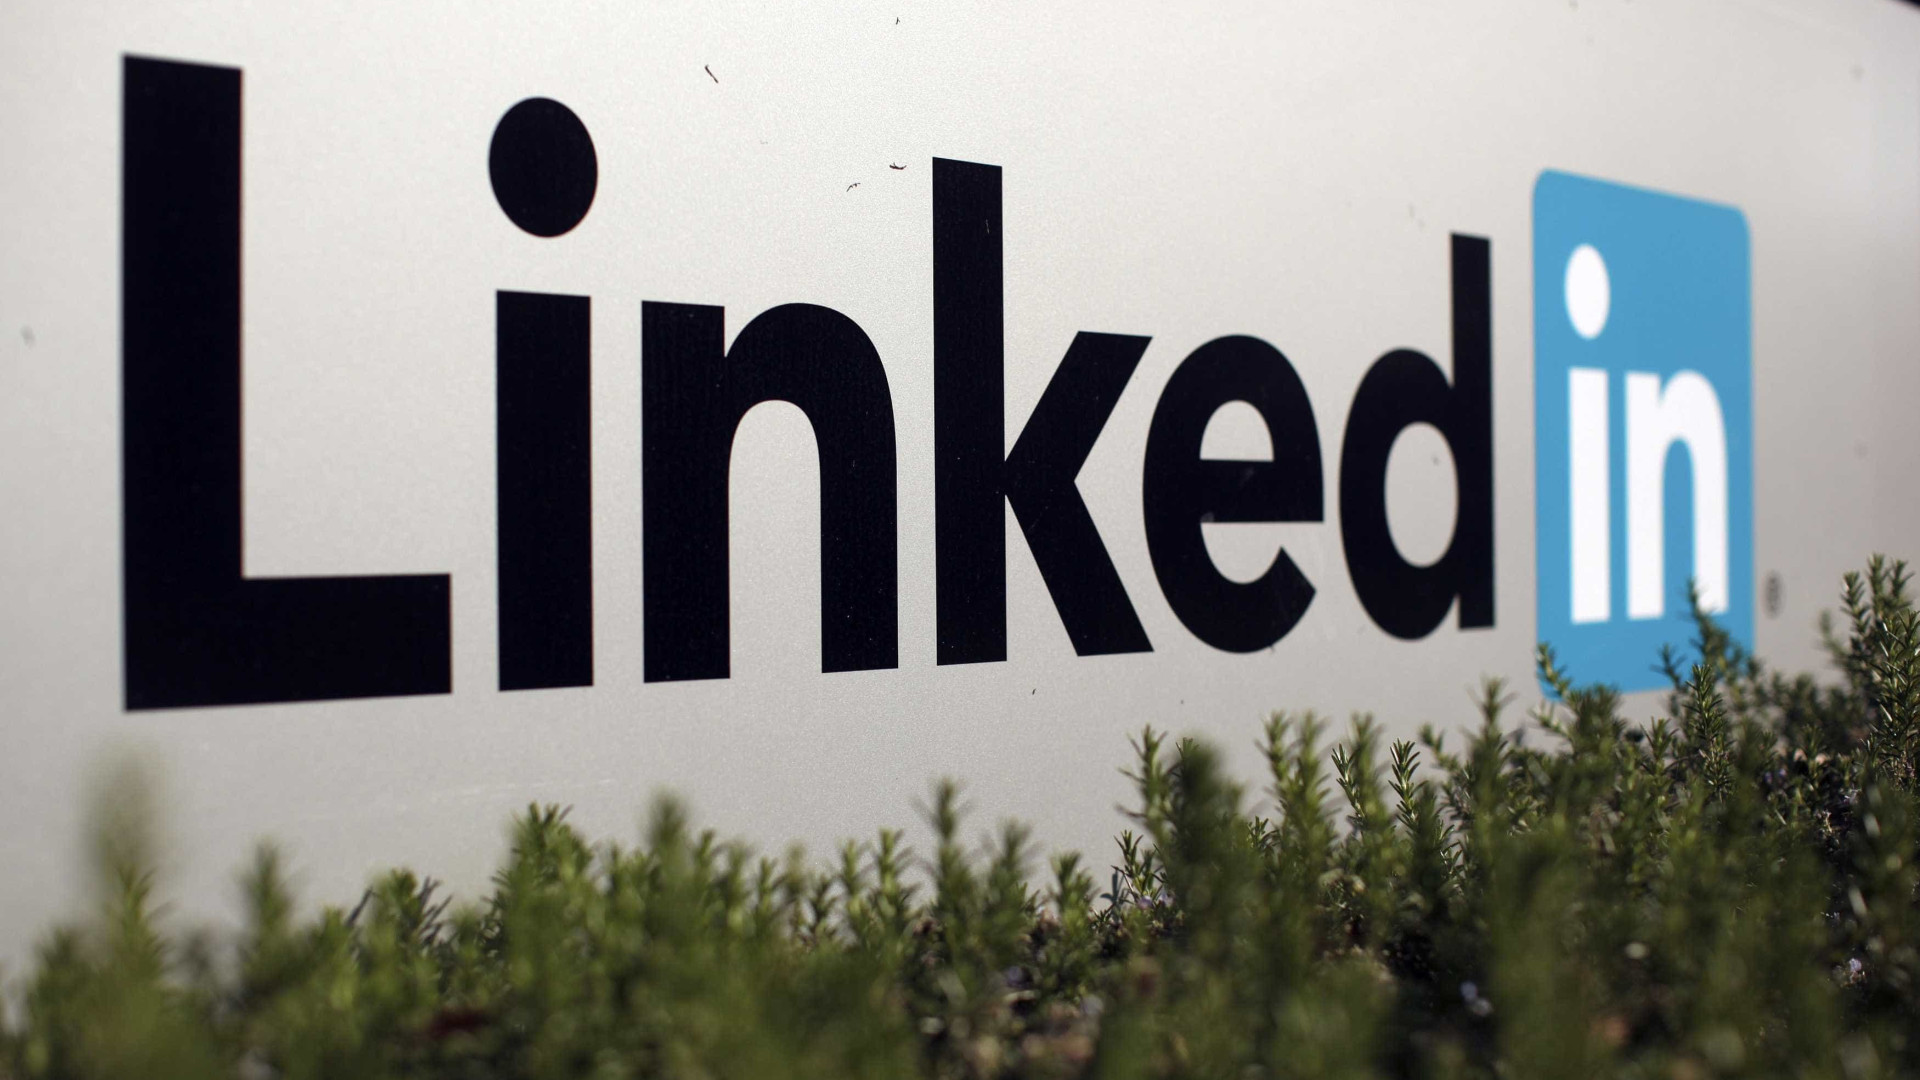 Procon-SP notifica LinkedIn após exclusão de vaga para negros e indígenas